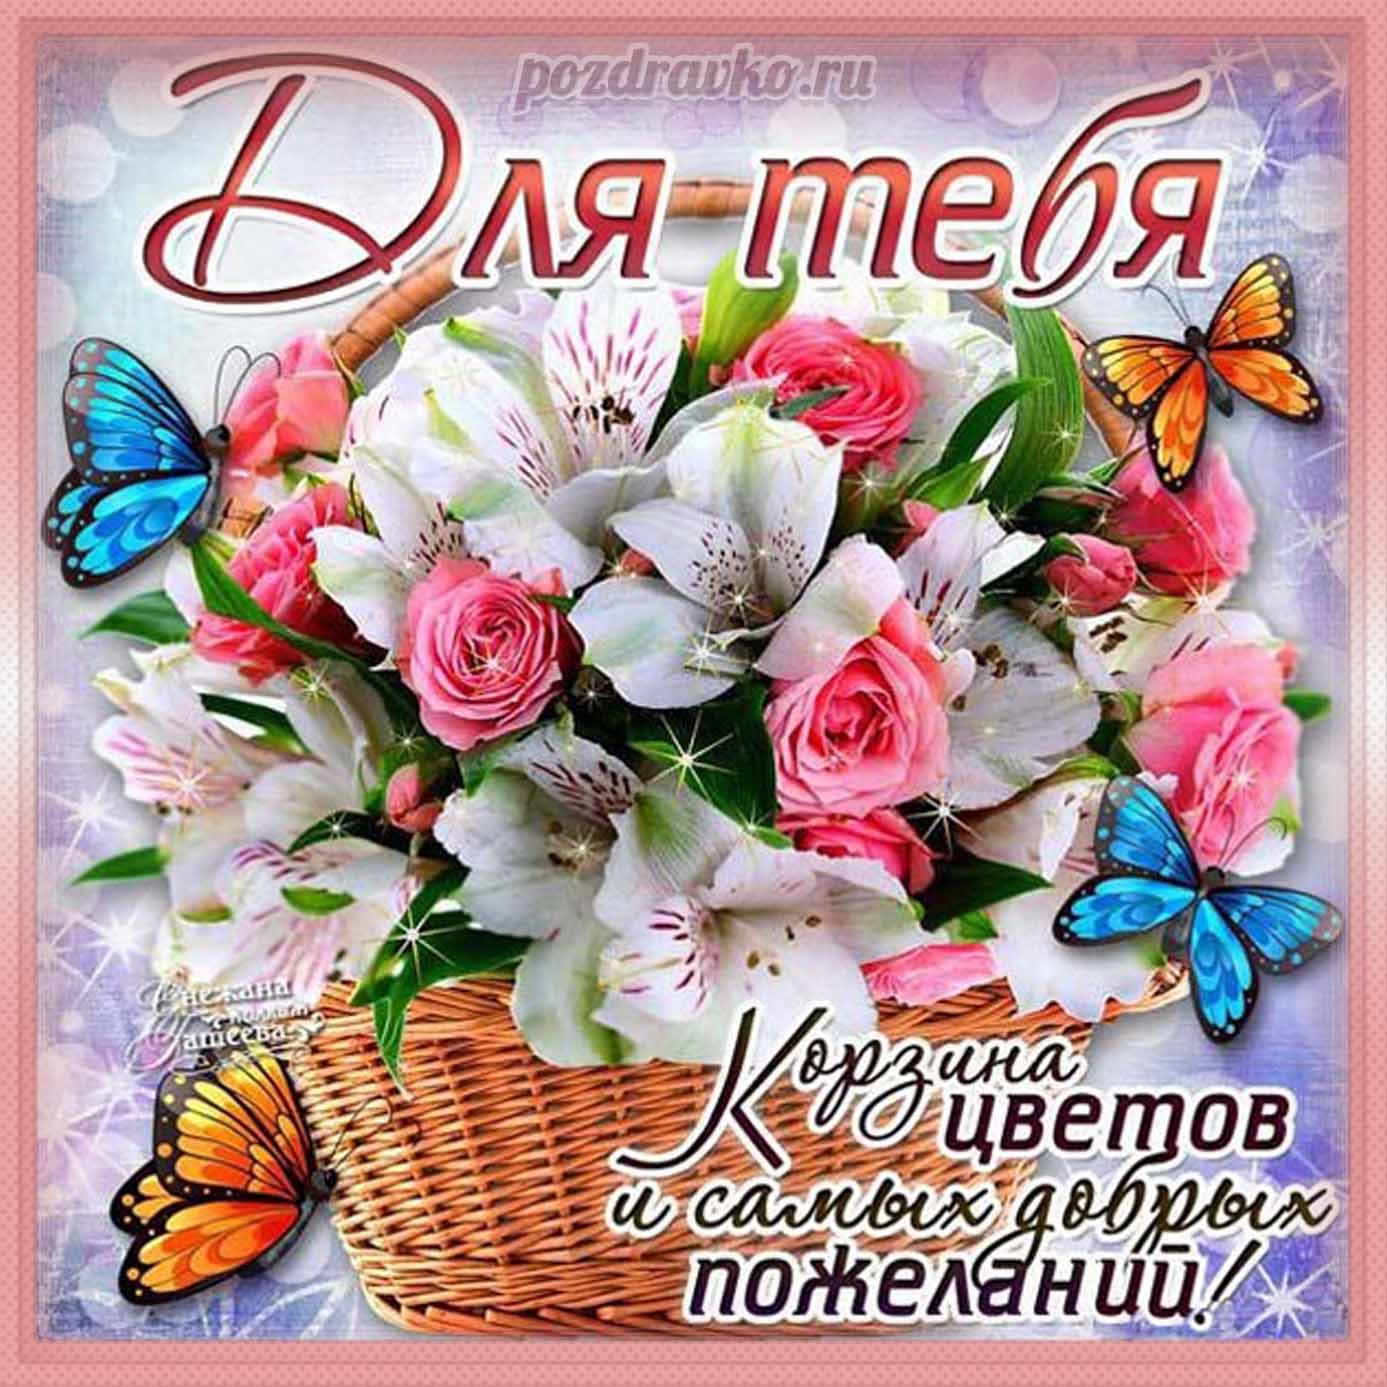 Открытка в букет № 7 От всей души — купить цветы с доставкой по Москве и области